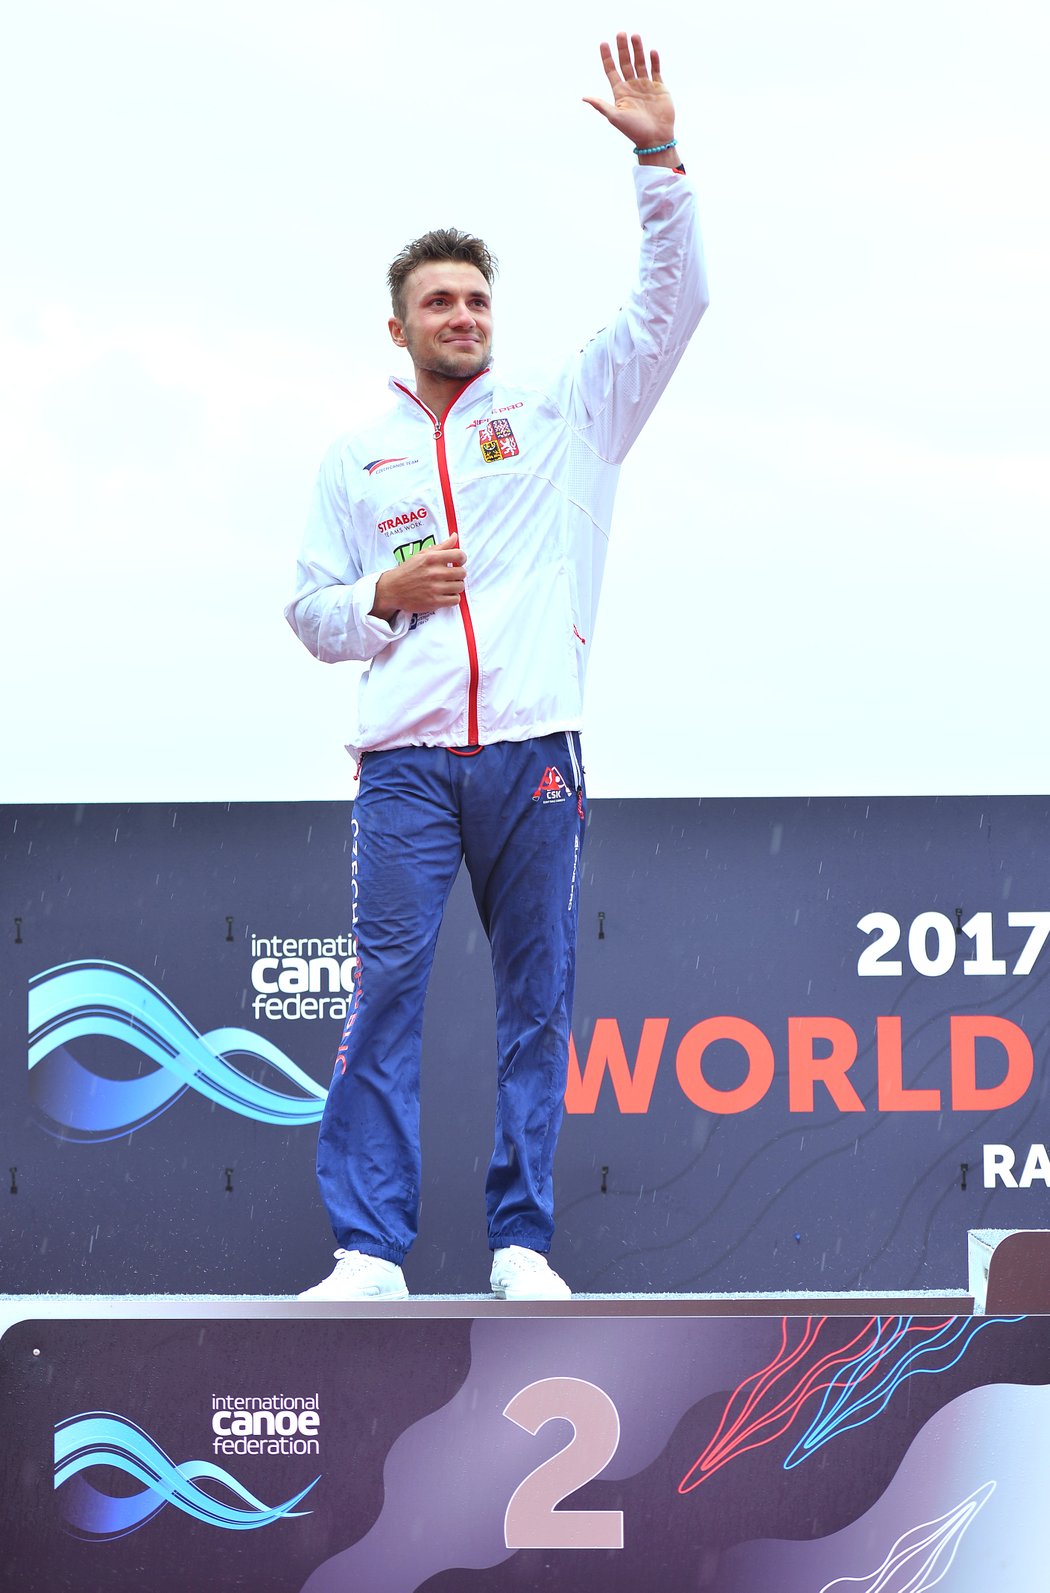 Kanoista Martin Fuksa obhájil na mistrovství světa v Račicích stříbrnou medaili na kilometru